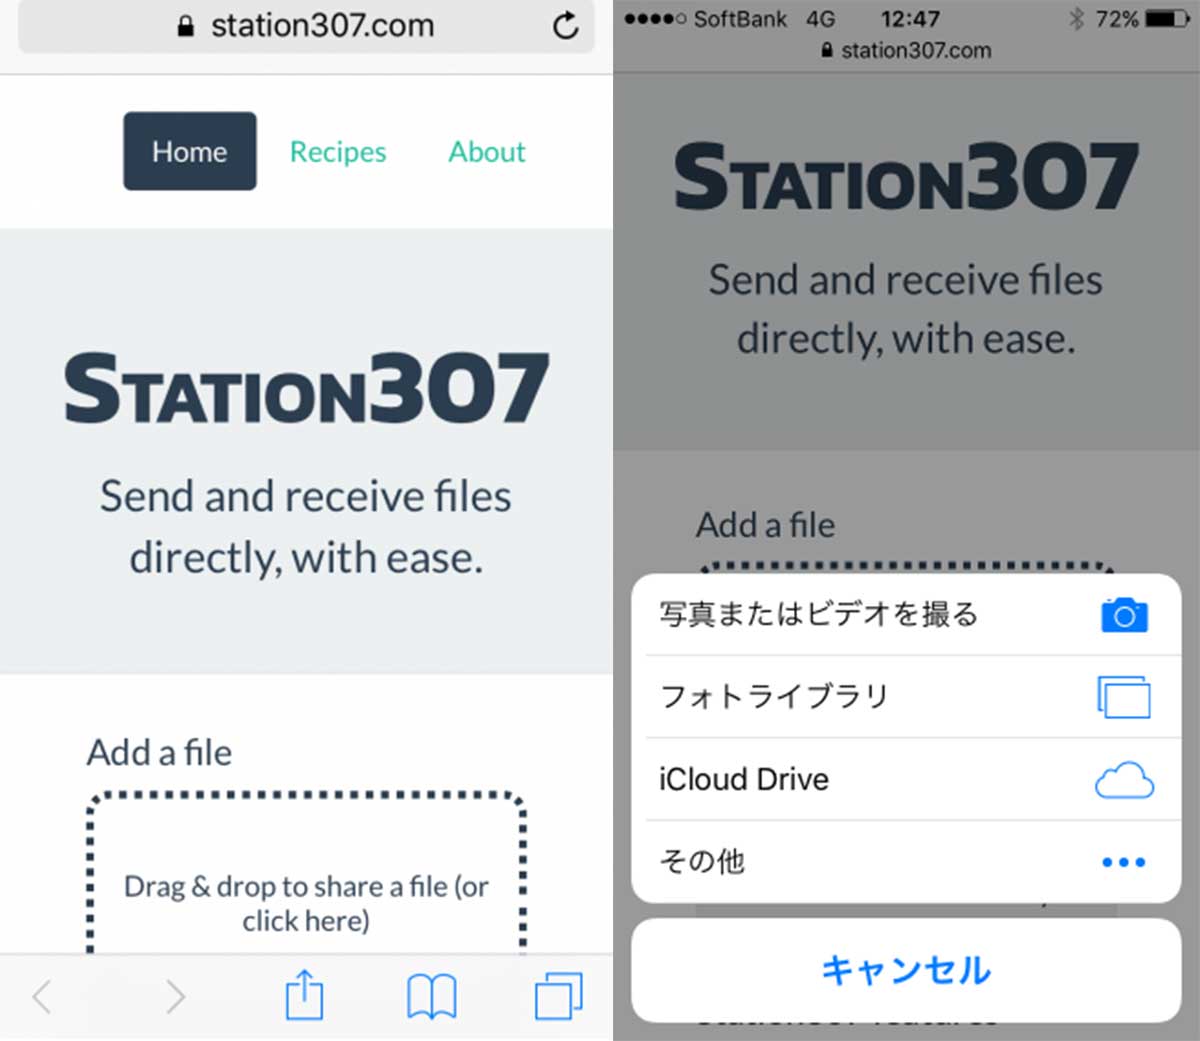 ブラウザだけで簡単にファイル転送ができるサービス「Station307」が便利すぎる!!